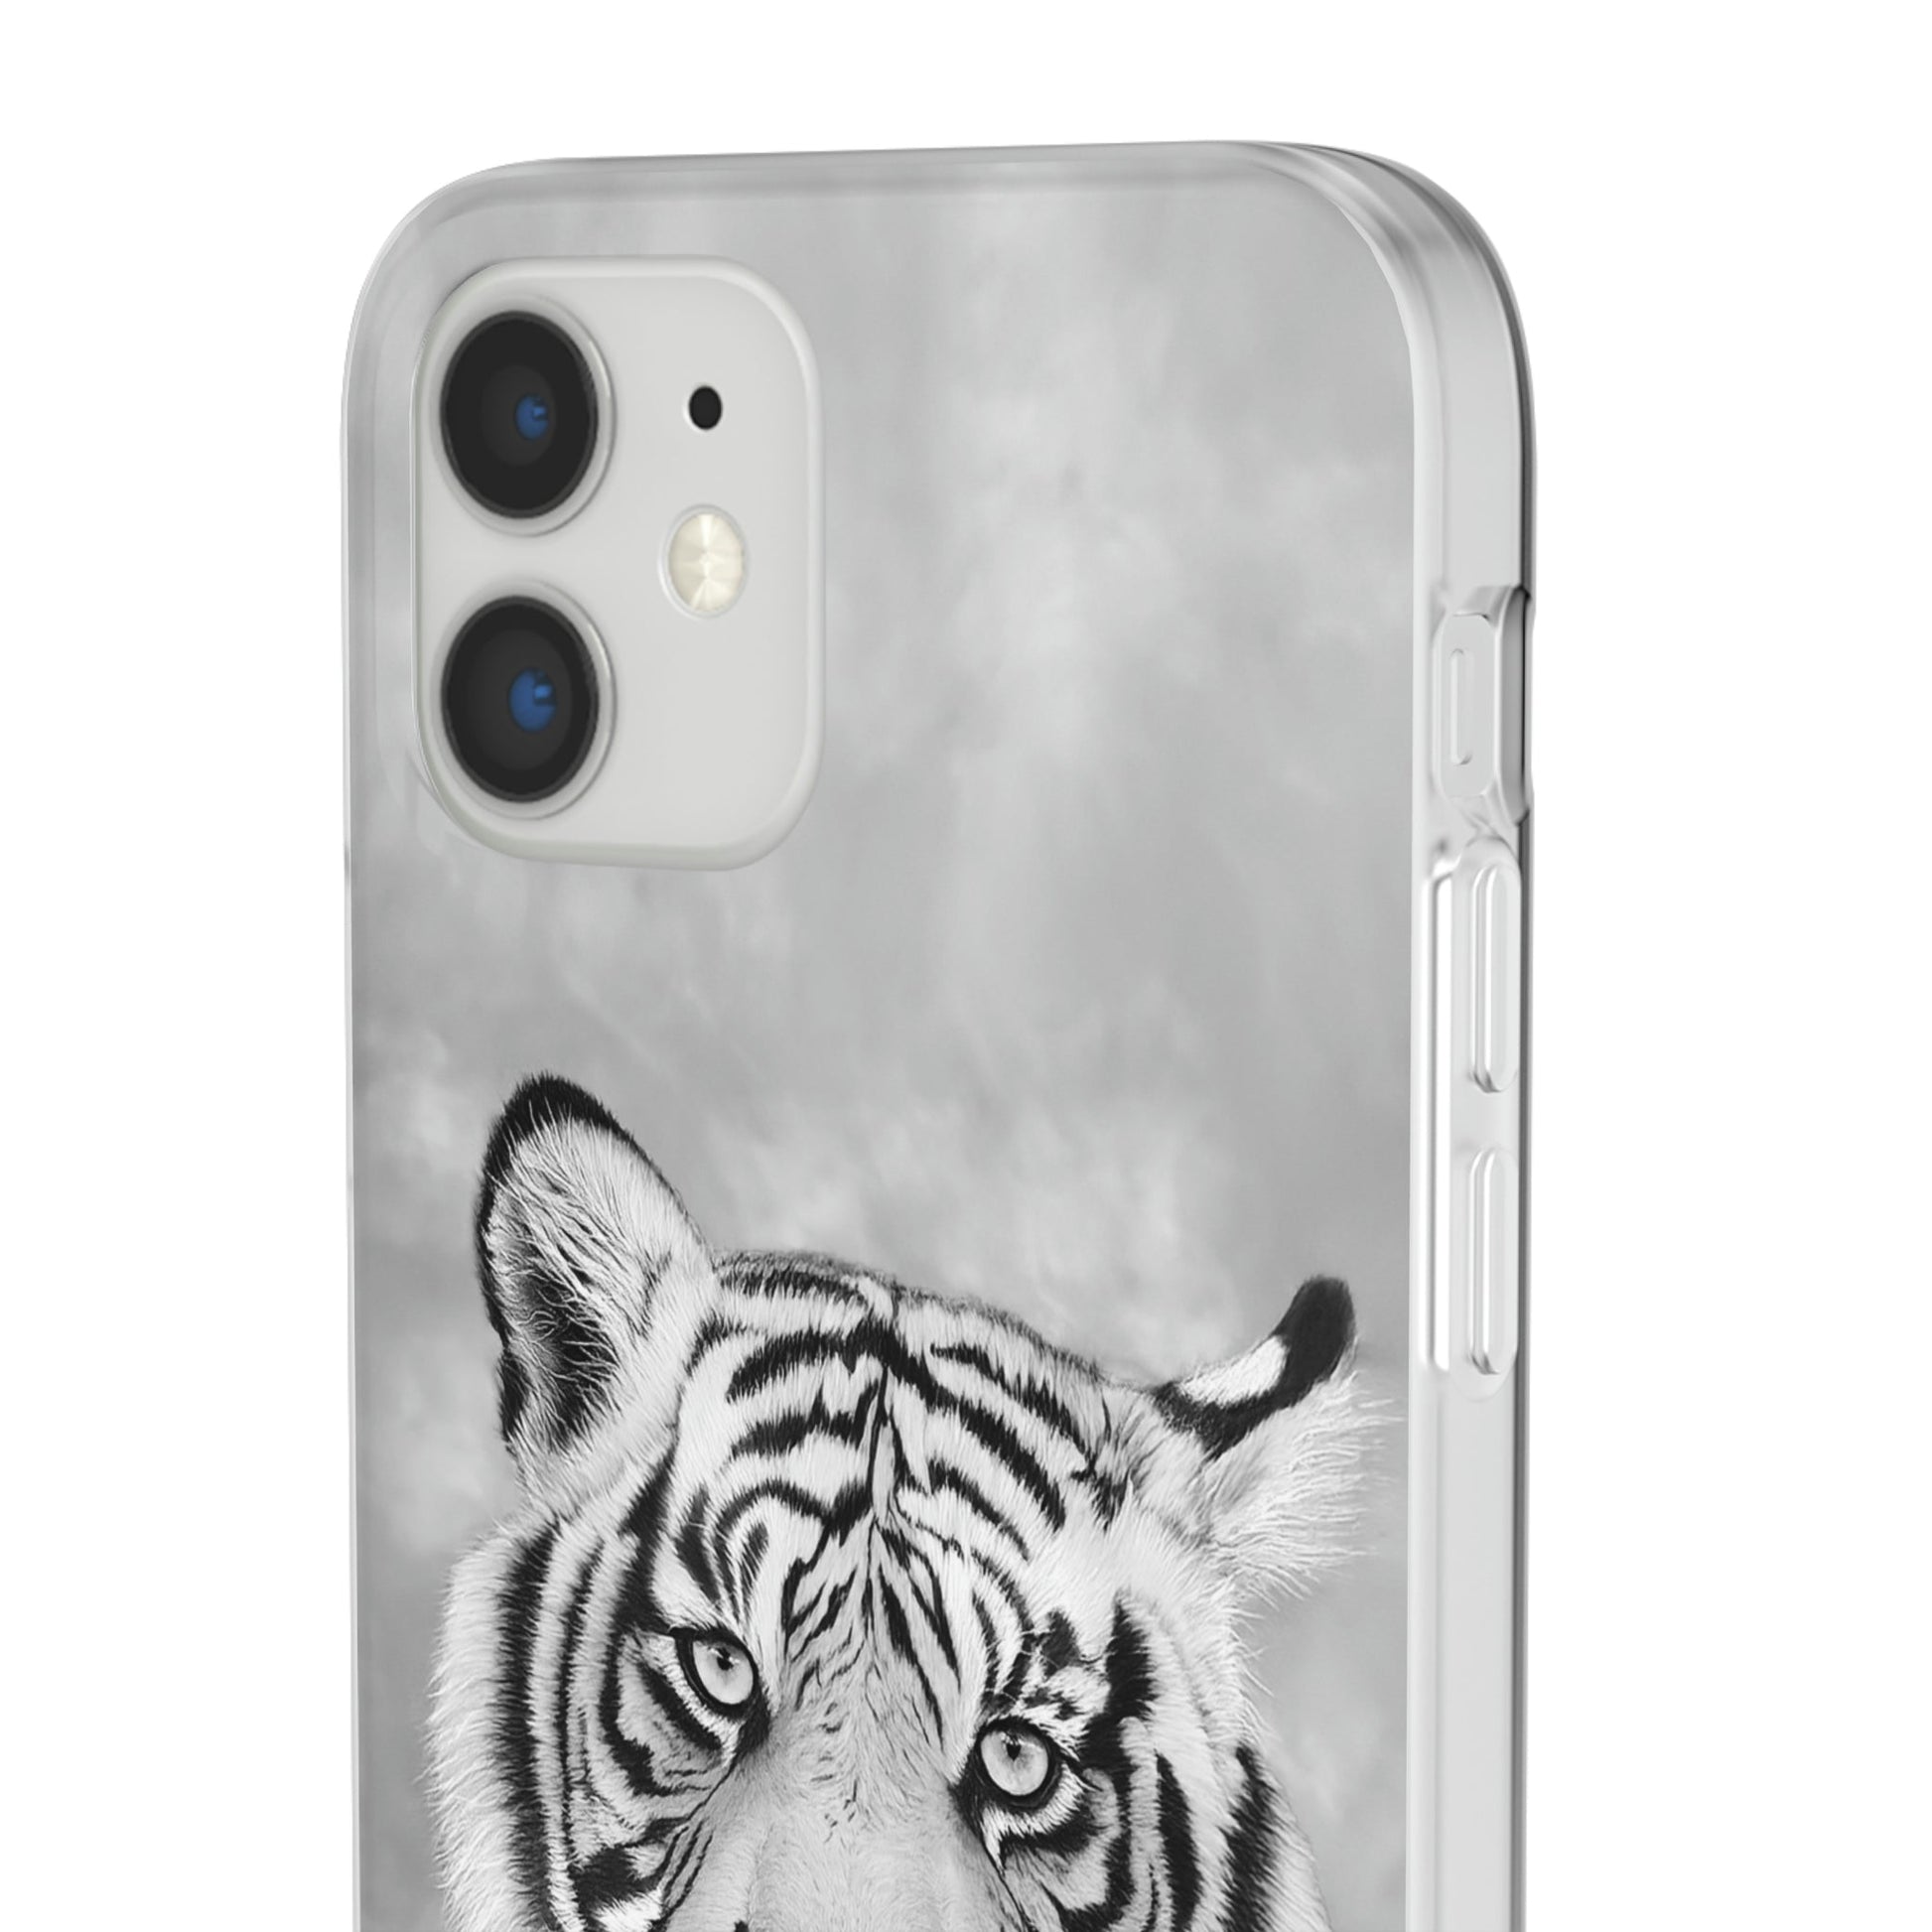 Flexi Cases - "Monochrome Tiger"